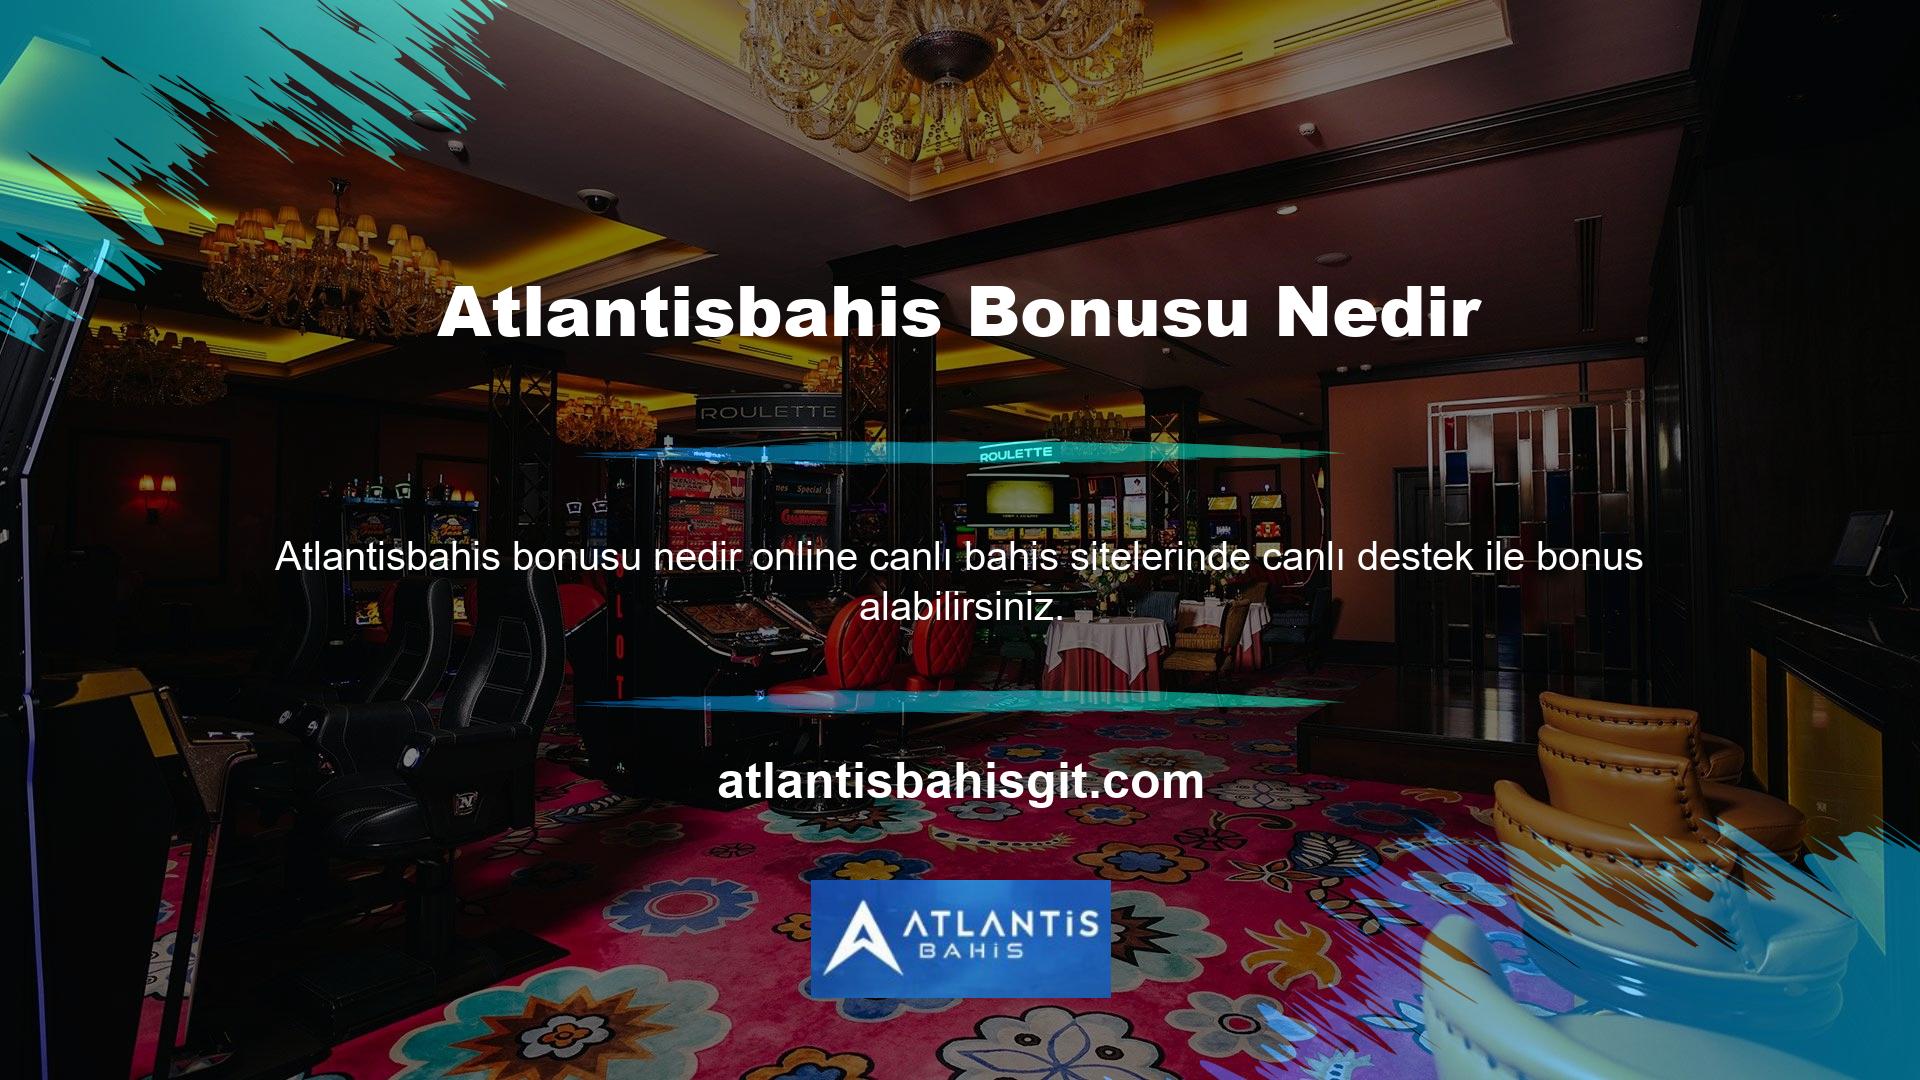 Atlantisbahis bonusları farklılık göstermektedir